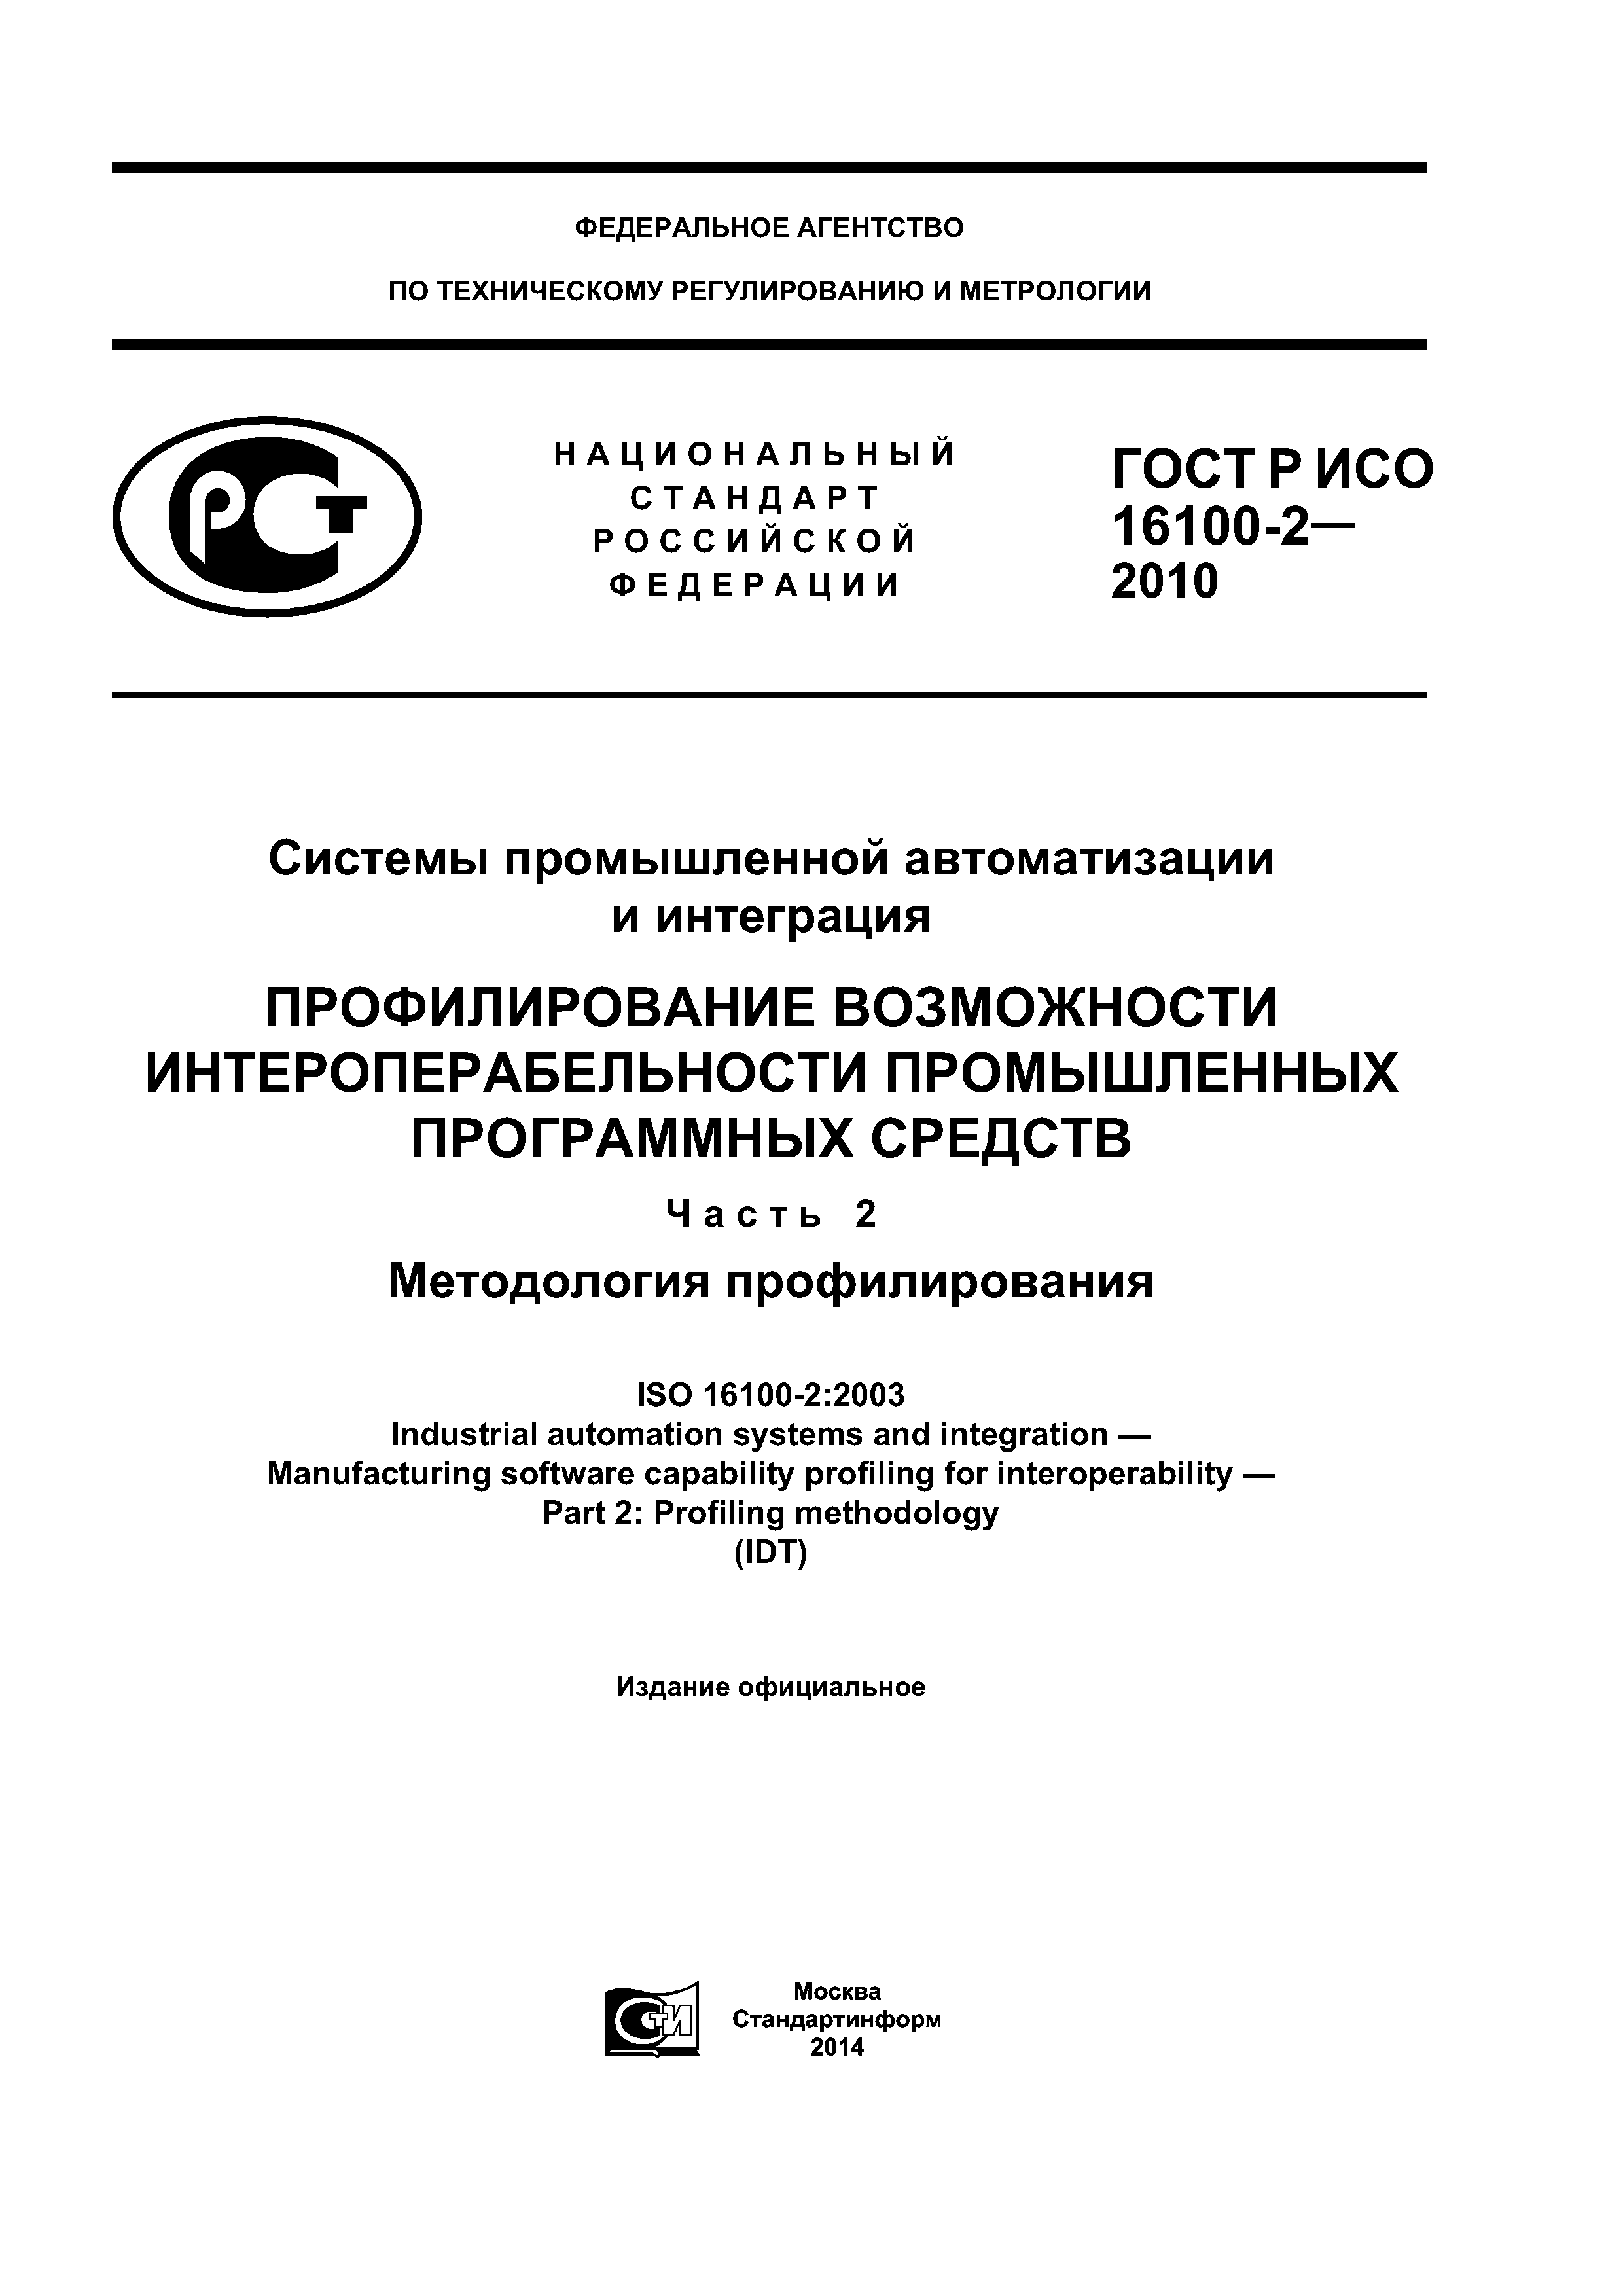 ГОСТ Р ИСО 16100-2-2010